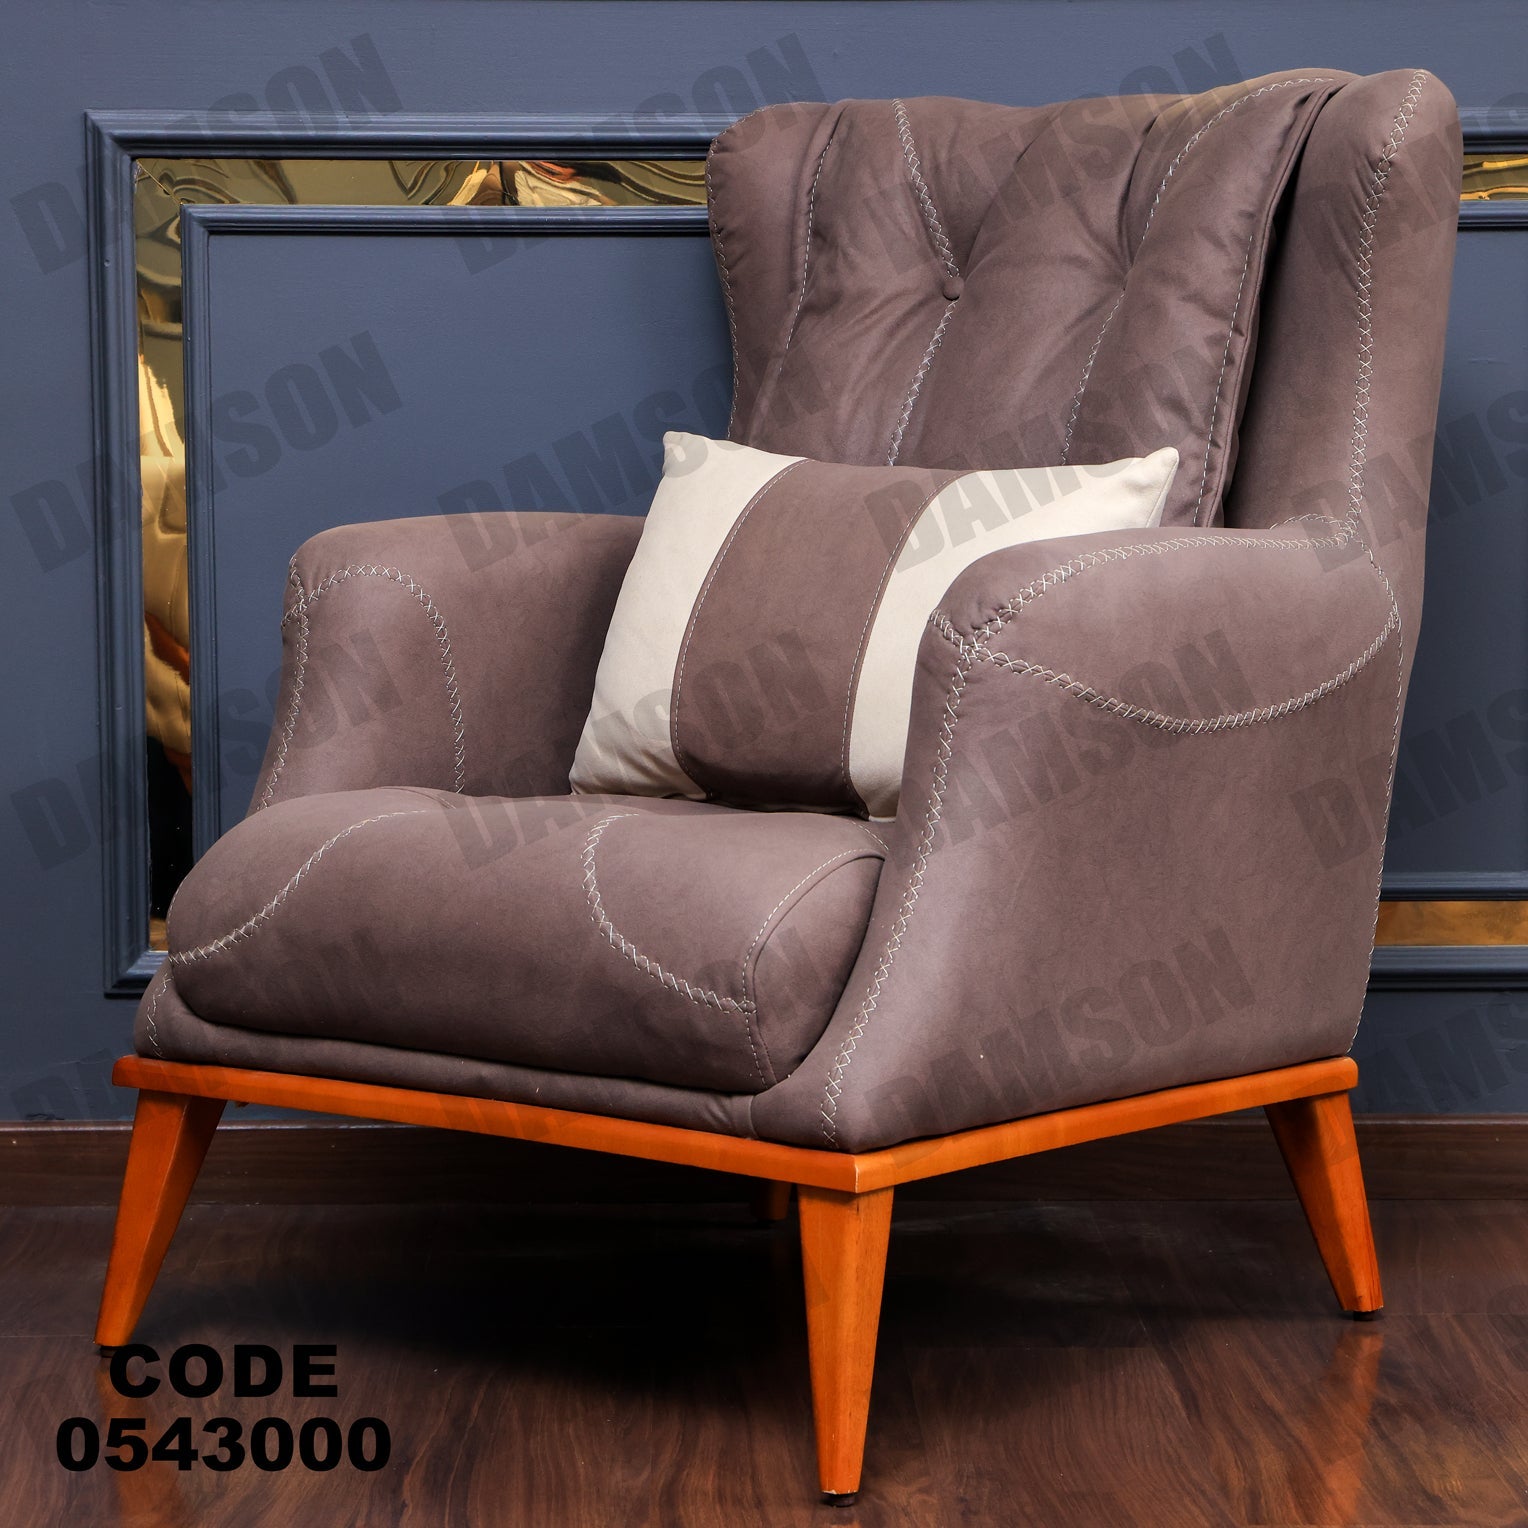 فوتية 1-430 - Damson Furnitureفوتية 1-430